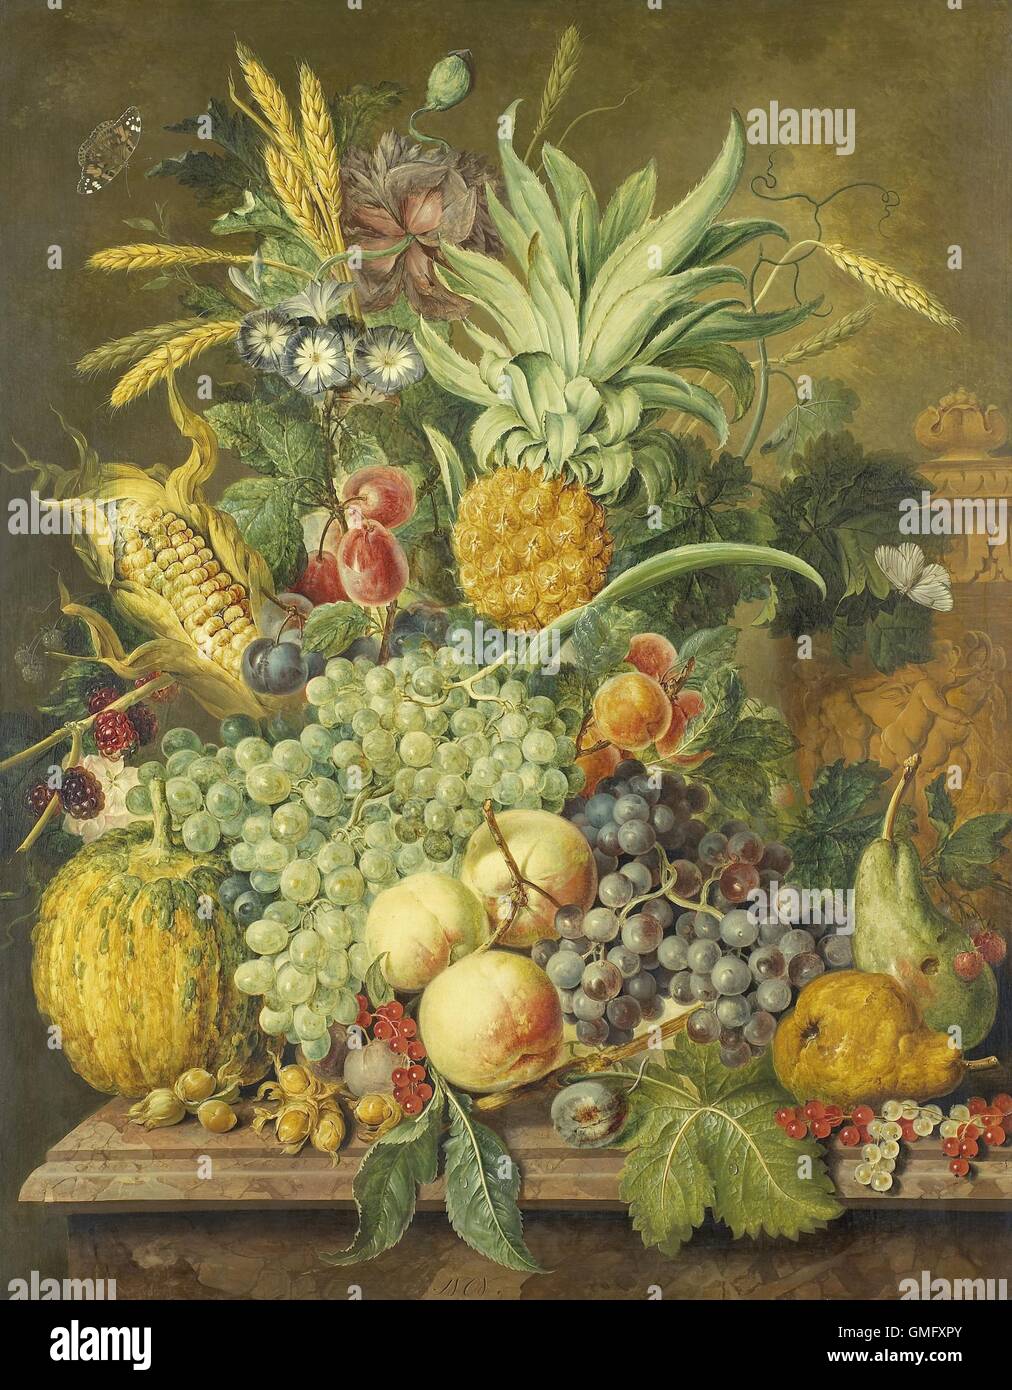 Nature morte avec fruits, par Jacobus Linthorst, 1808, la peinture hollandaise, huile sur panneau. Arrangement riche de divers fruits et légumes, fleurs, et un papillon. Sur la droite se trouve une à décor de putti (BSLOC 2016 2 281) Banque D'Images